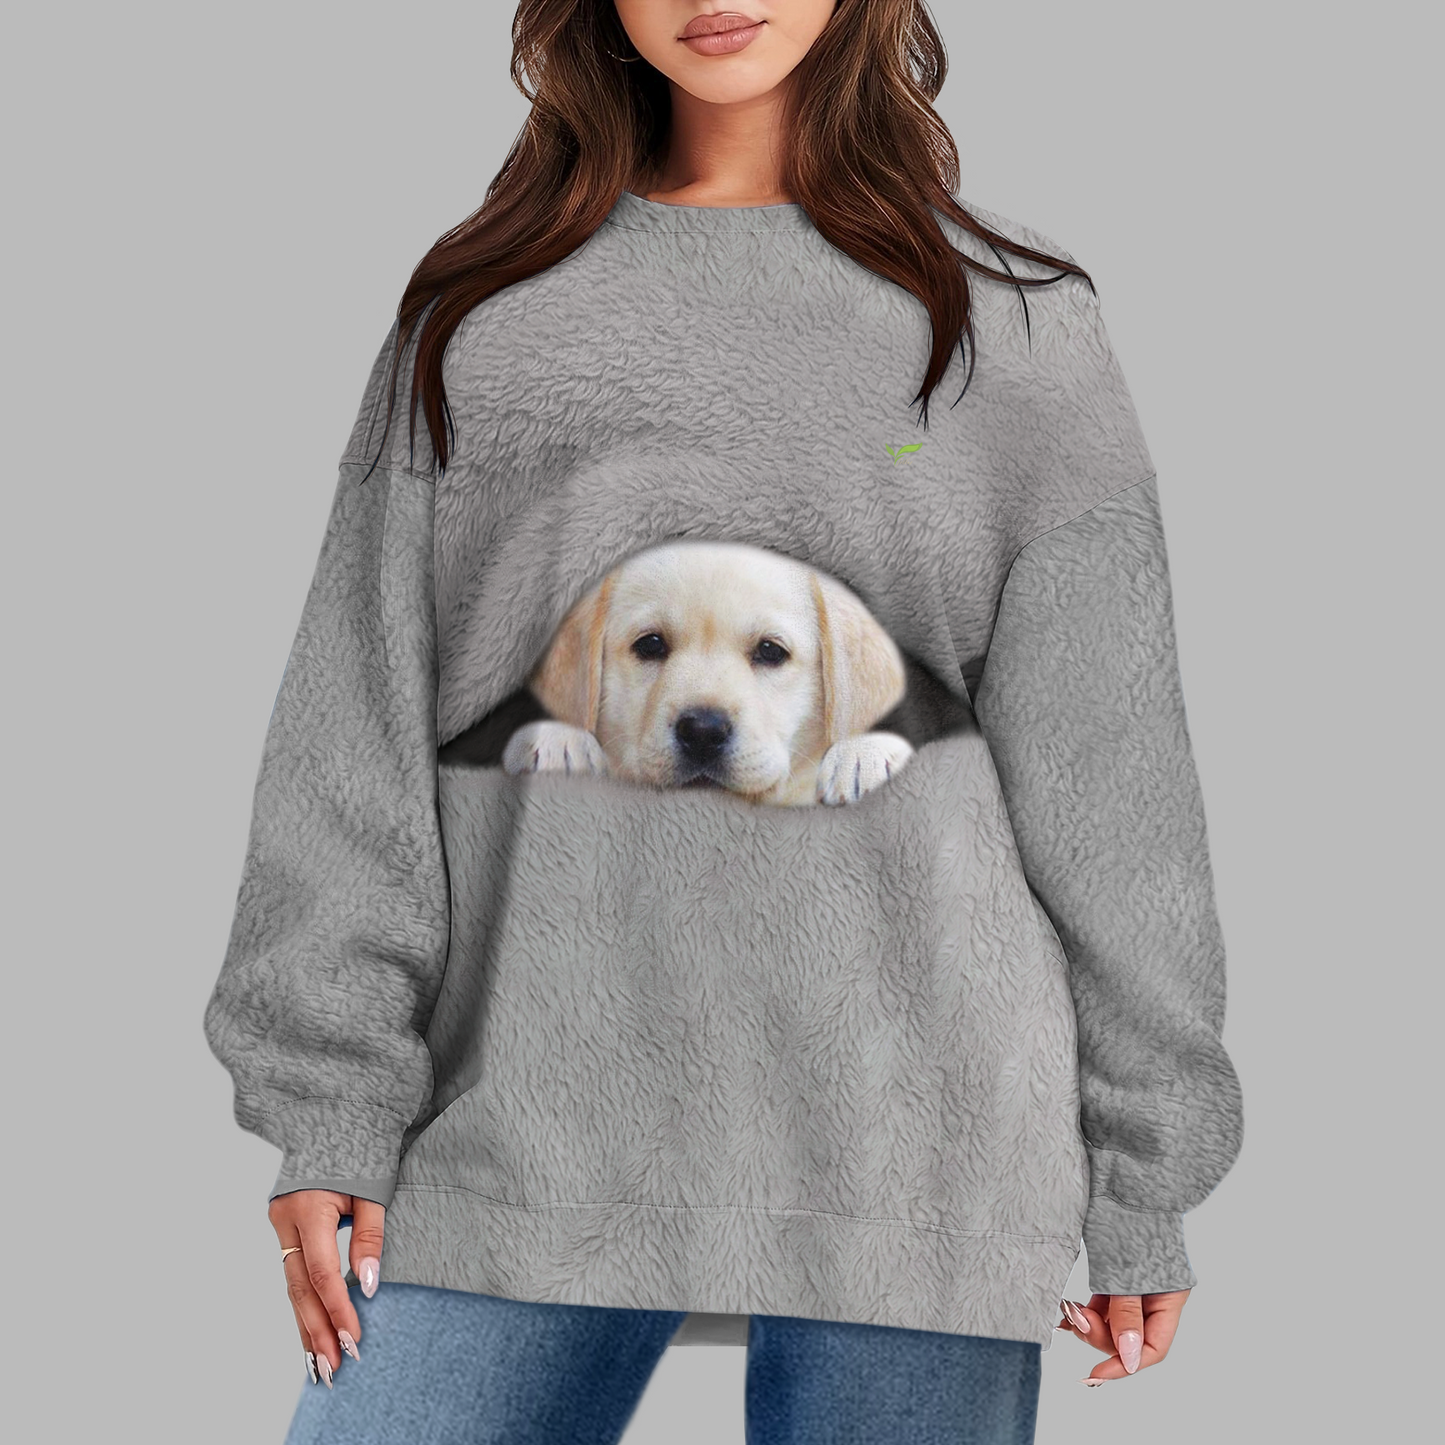 Good Morning Dress Warm - Sweat-shirt personnalisé avec la photo de votre chien